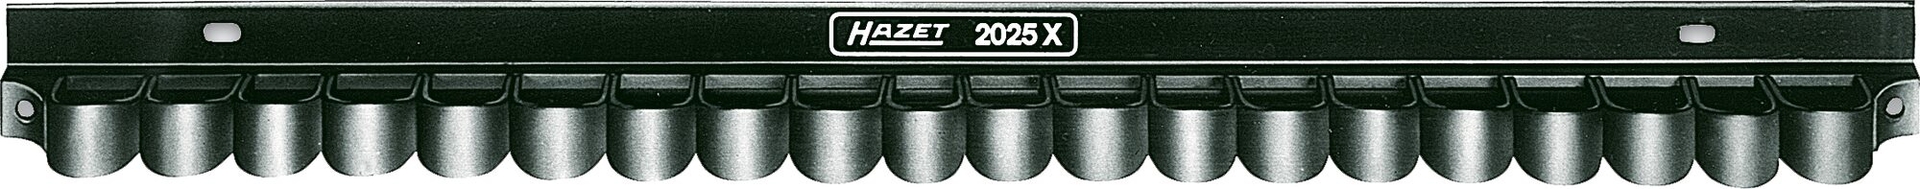 HAZET Werkzeug-Halter 2025X